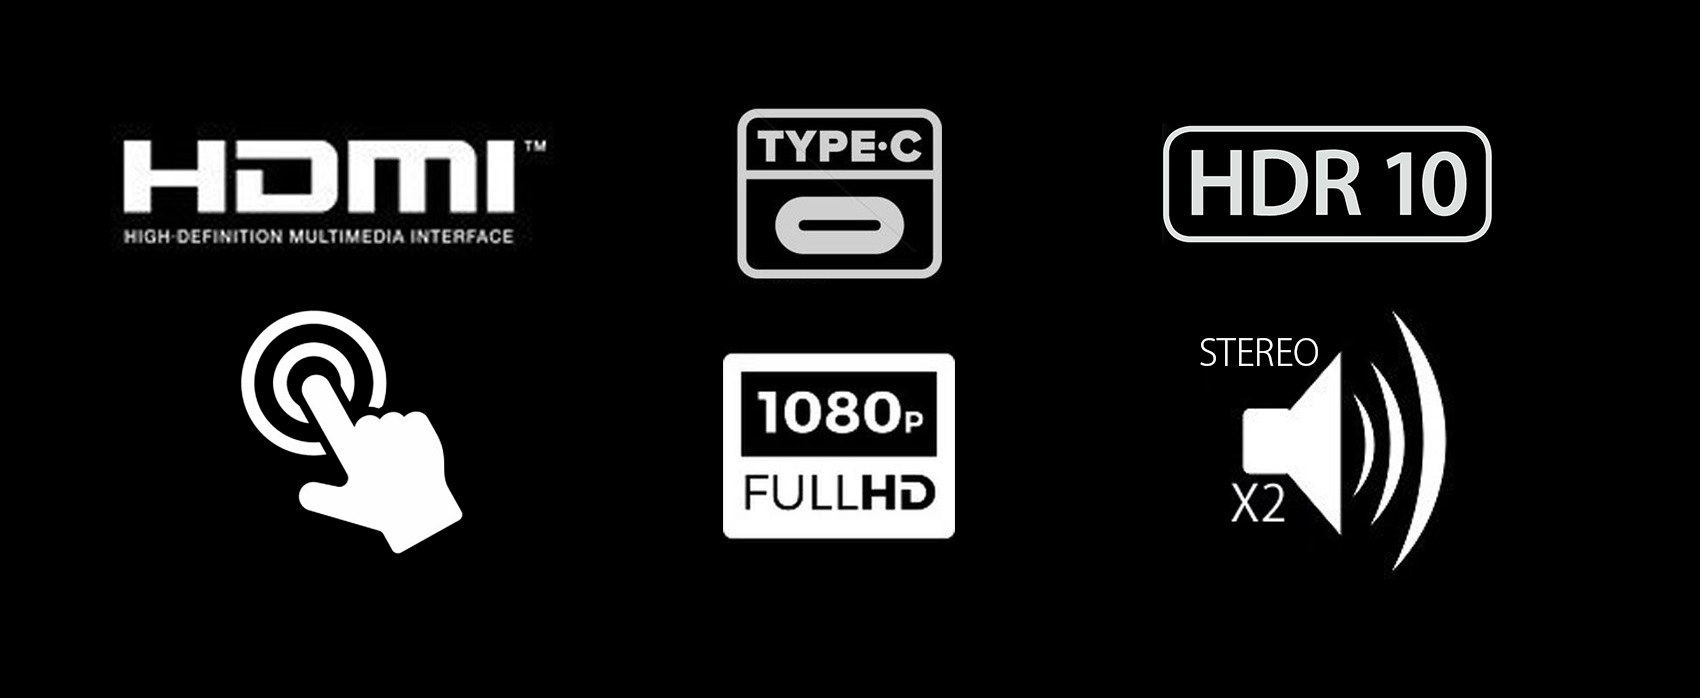 タッチパネル採用15.6インチ　モバイルモニターJN-MD-IPS1560TFHDRついに誕生！ 1920x1080 IPSパネルで色鮮やか。HDR対応　type-C HDMI 極薄　超軽量